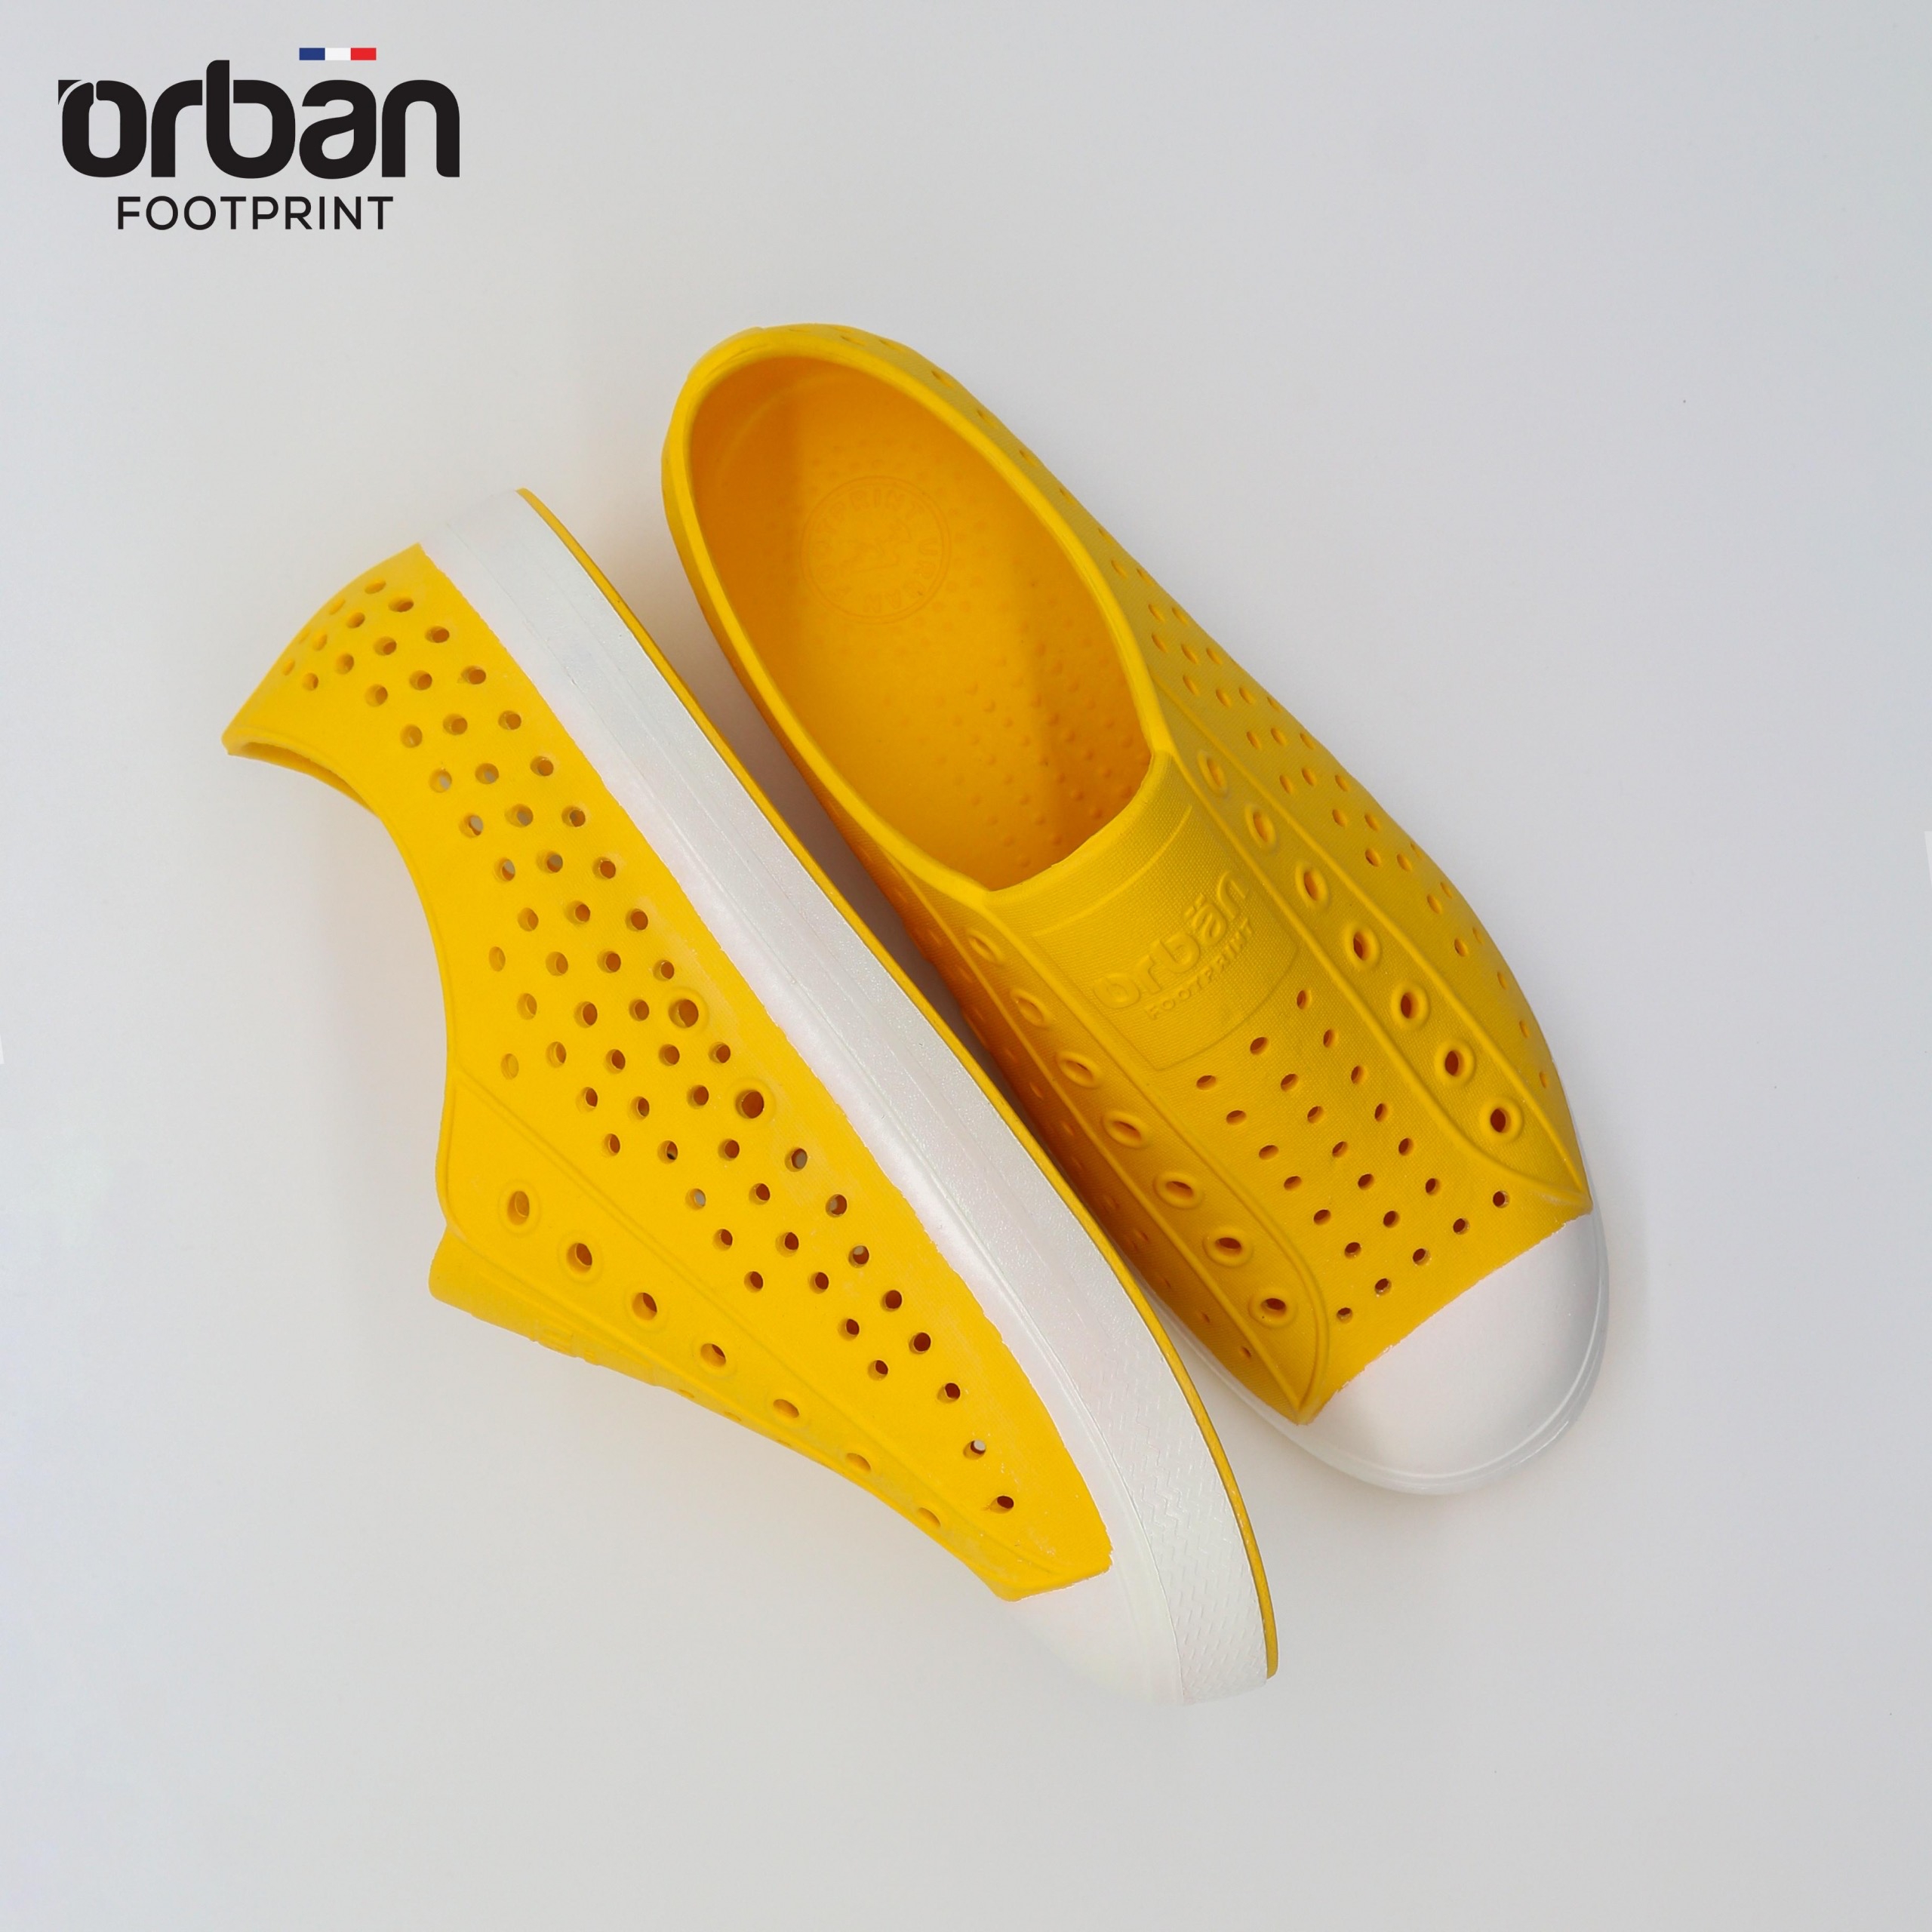 Giày Urban Eva Fylon – D2001 Vàng Trắng